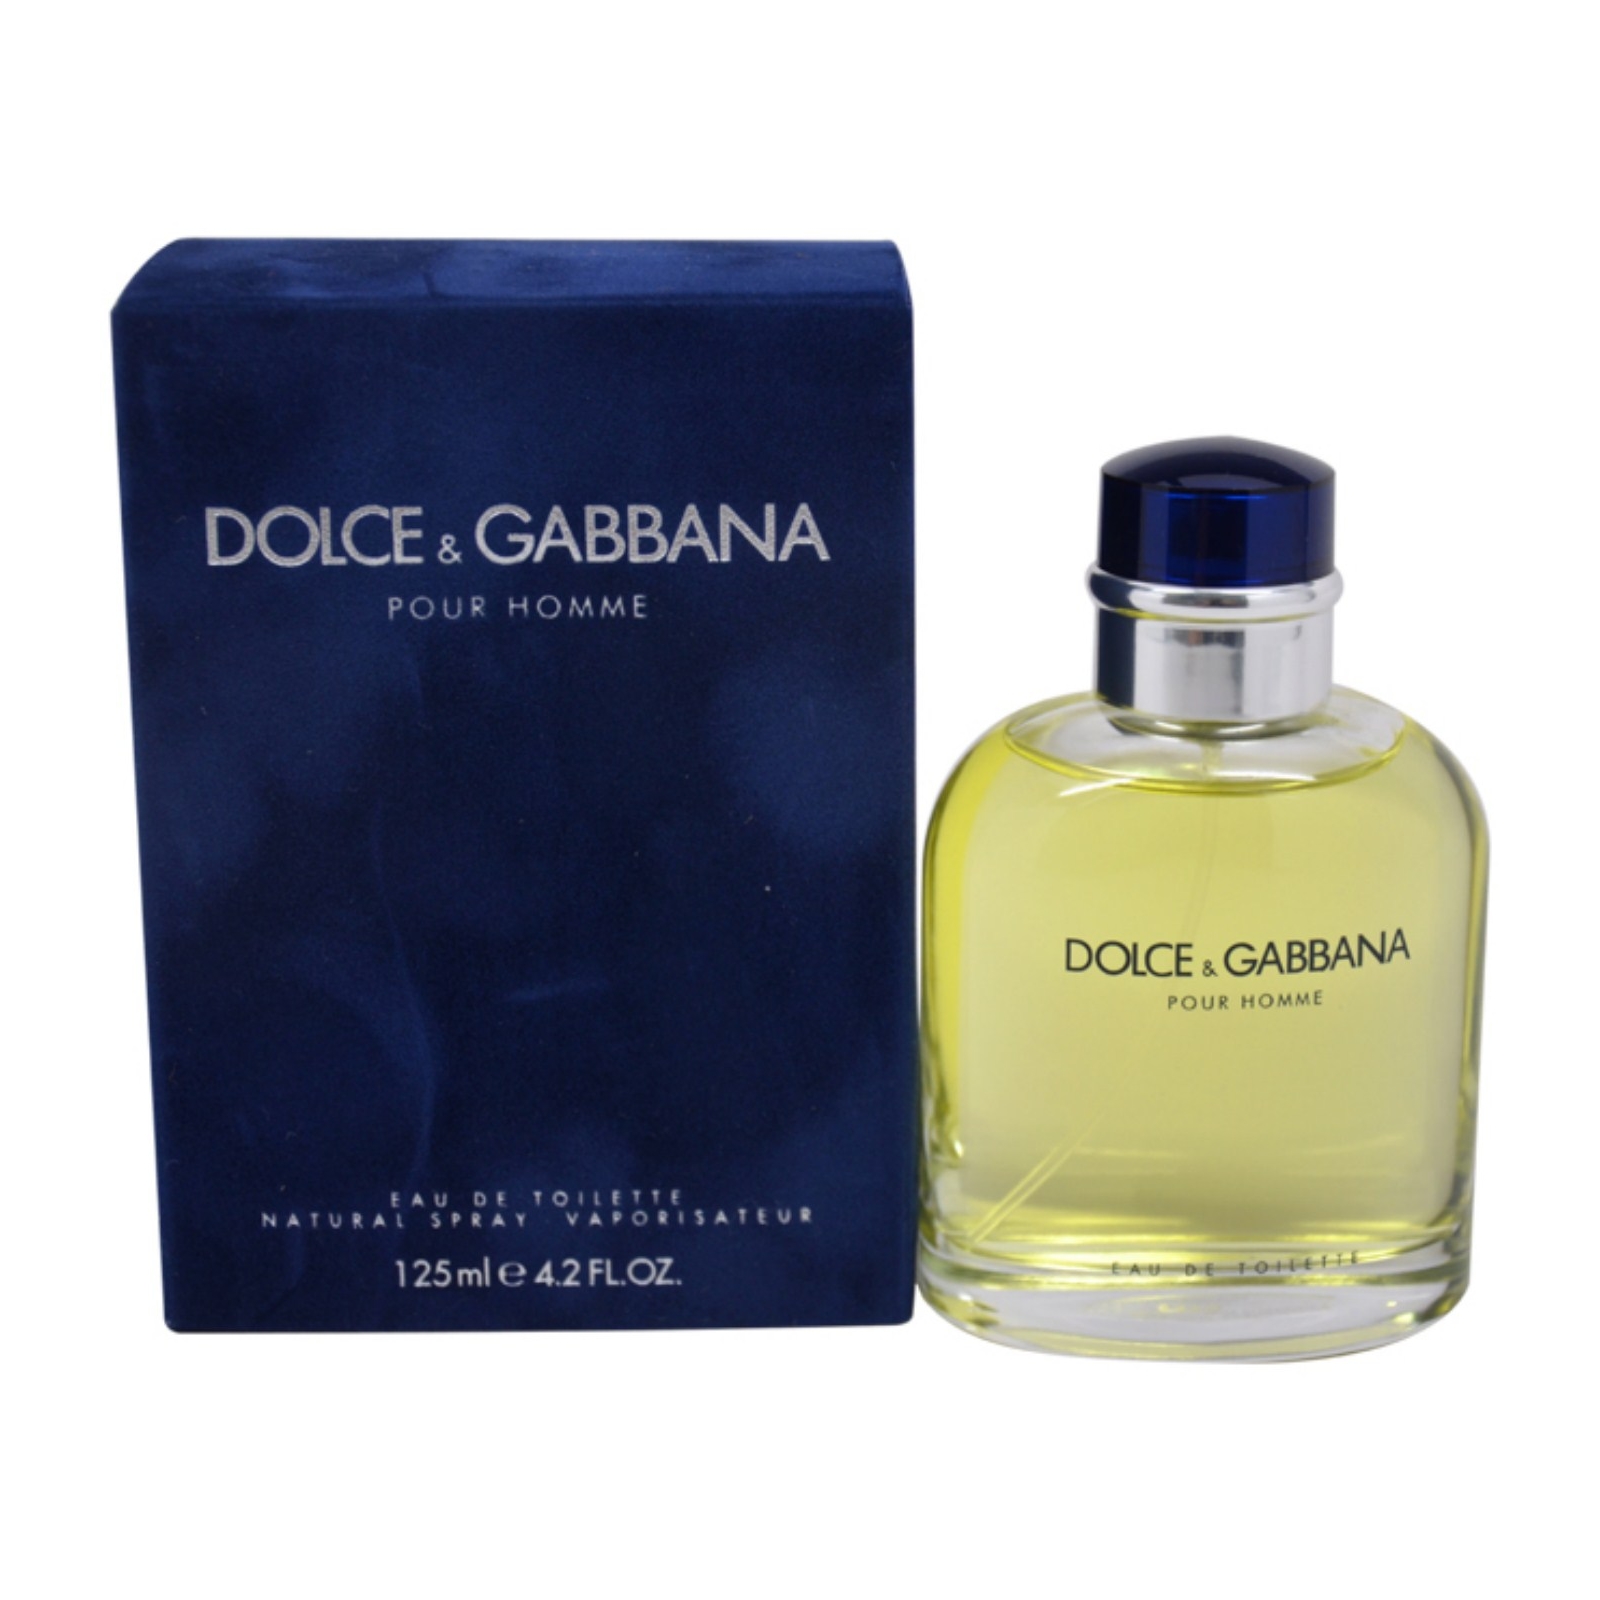 Дольче габбана для мужчин. Dolce Gabbana pour homme. Dolce&Gabbana pour homme Dolce&Gabbana for men 125ml. Dolce Gabbana Eau de Toilette мужская. Dolce Gabbana pour homme 75 мл.